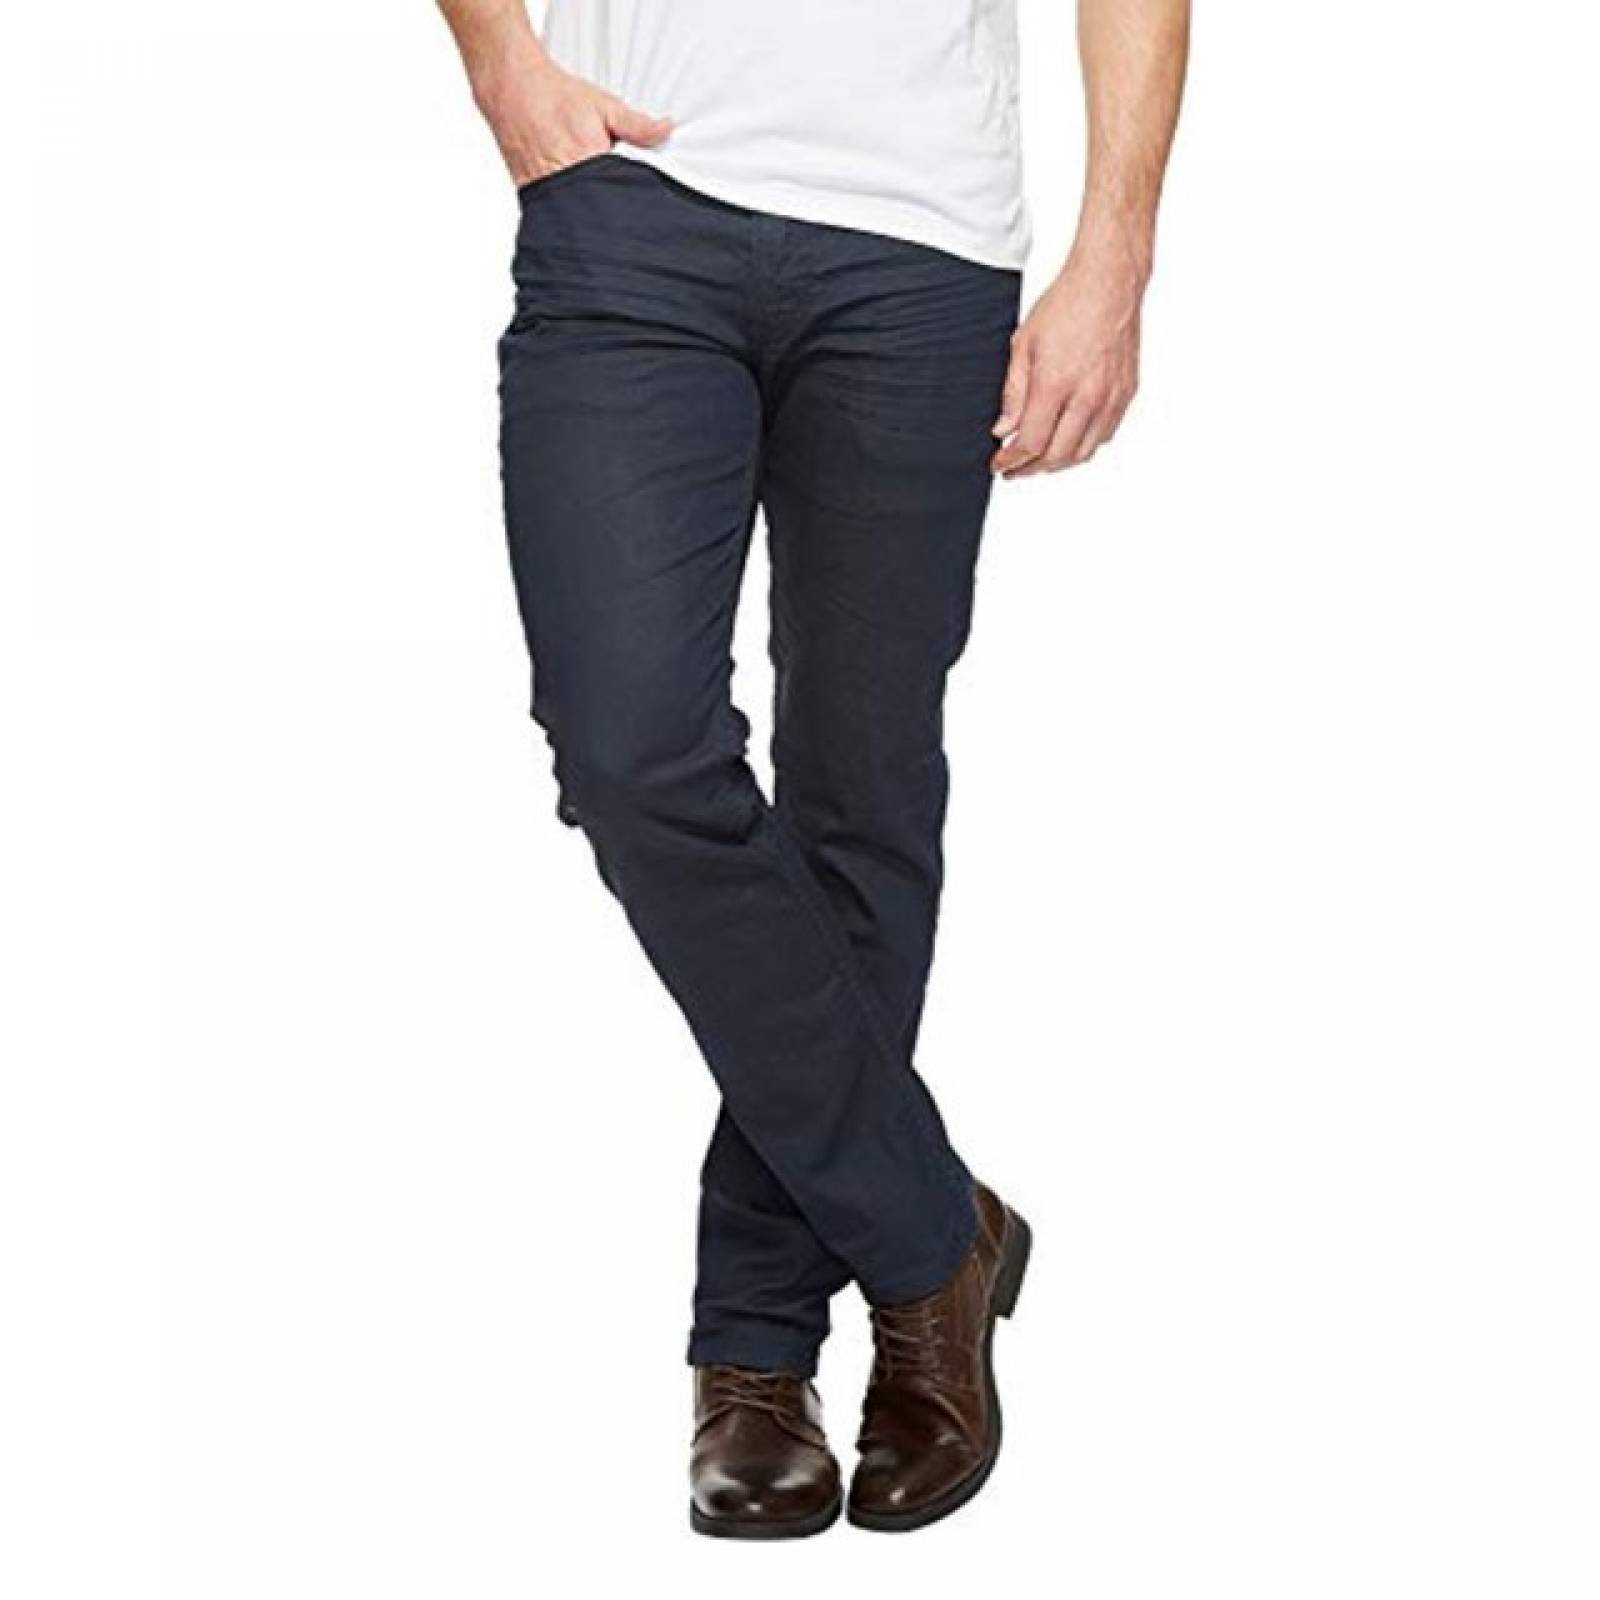 Jeans Levis 511 Slim Fit 04511-2274